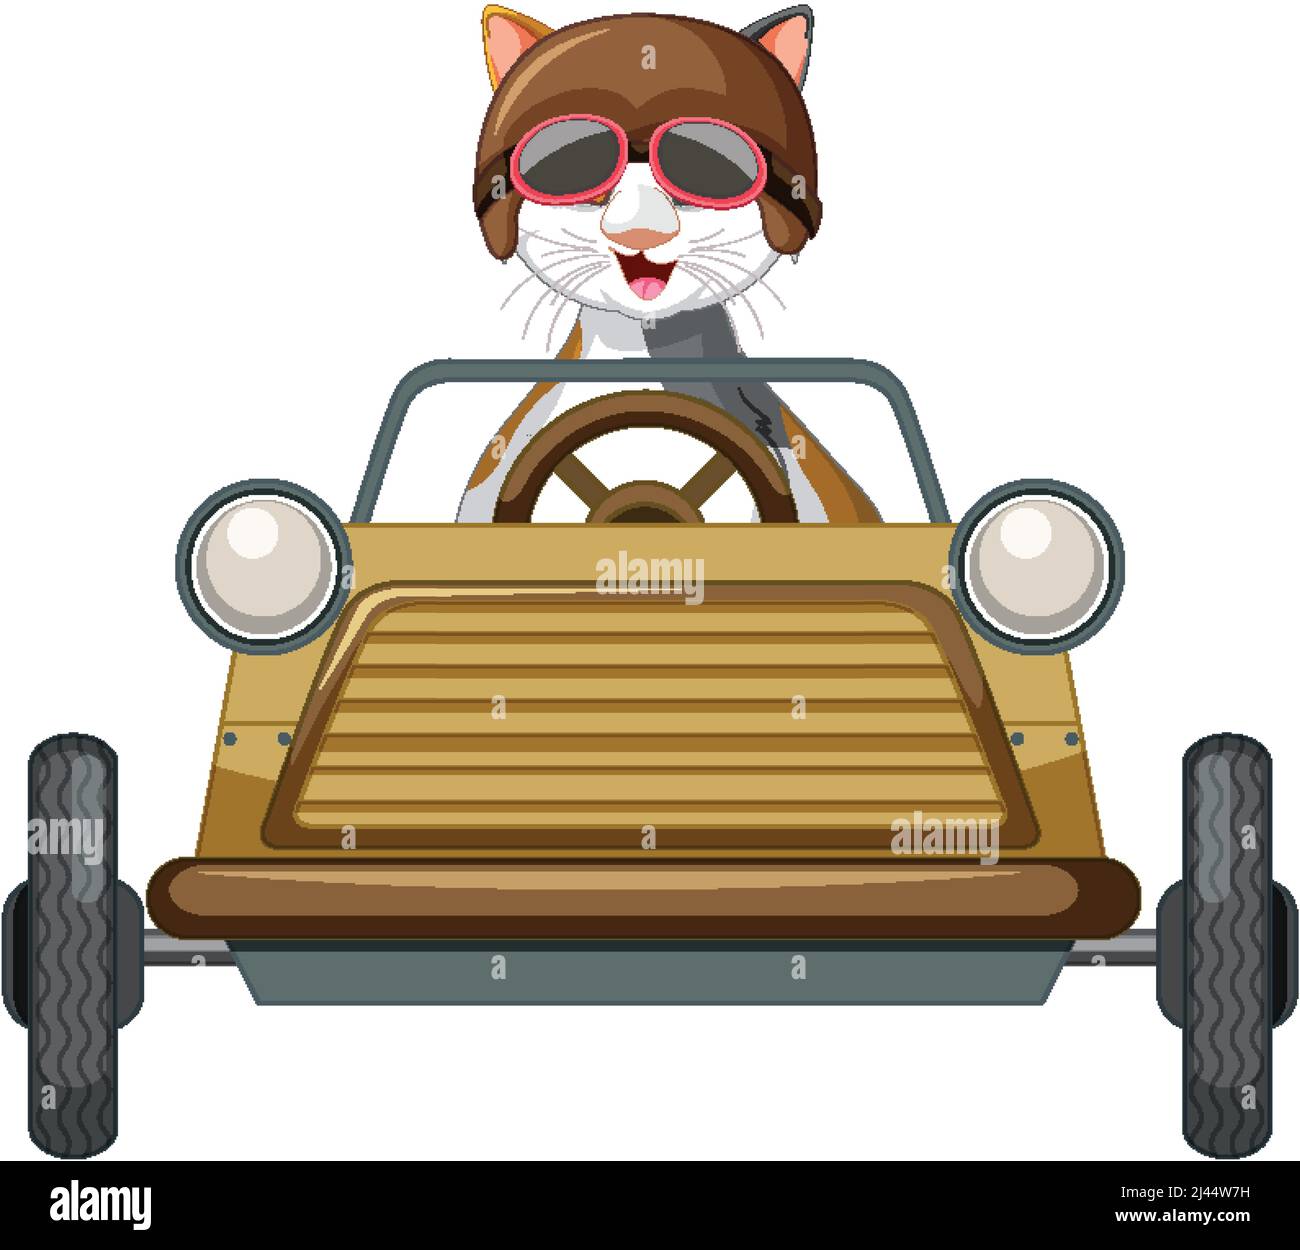 Illustration de voiture derby avec boîte à savon et chat de dessin animé  Image Vectorielle Stock - Alamy